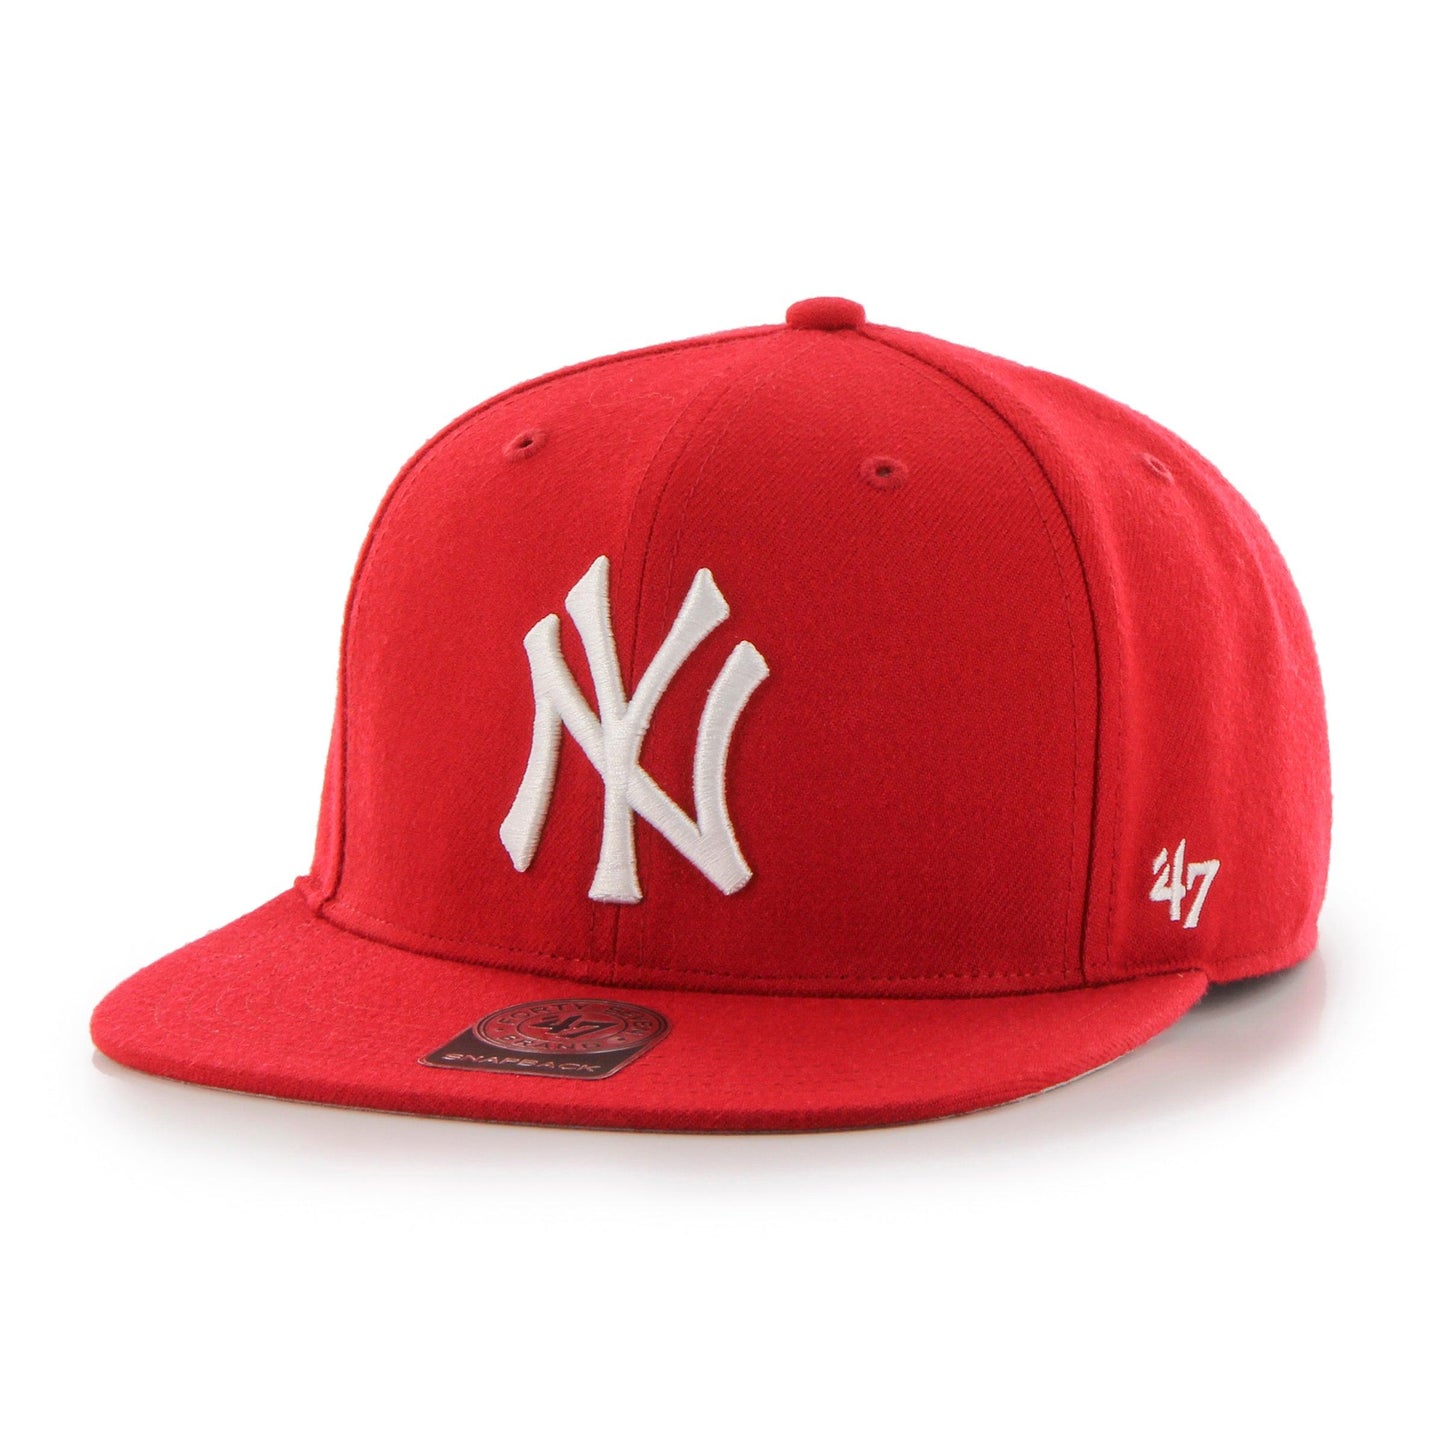 MLB NEW YORK YANKEES NO SHOT ’47 CAPTAIN RED